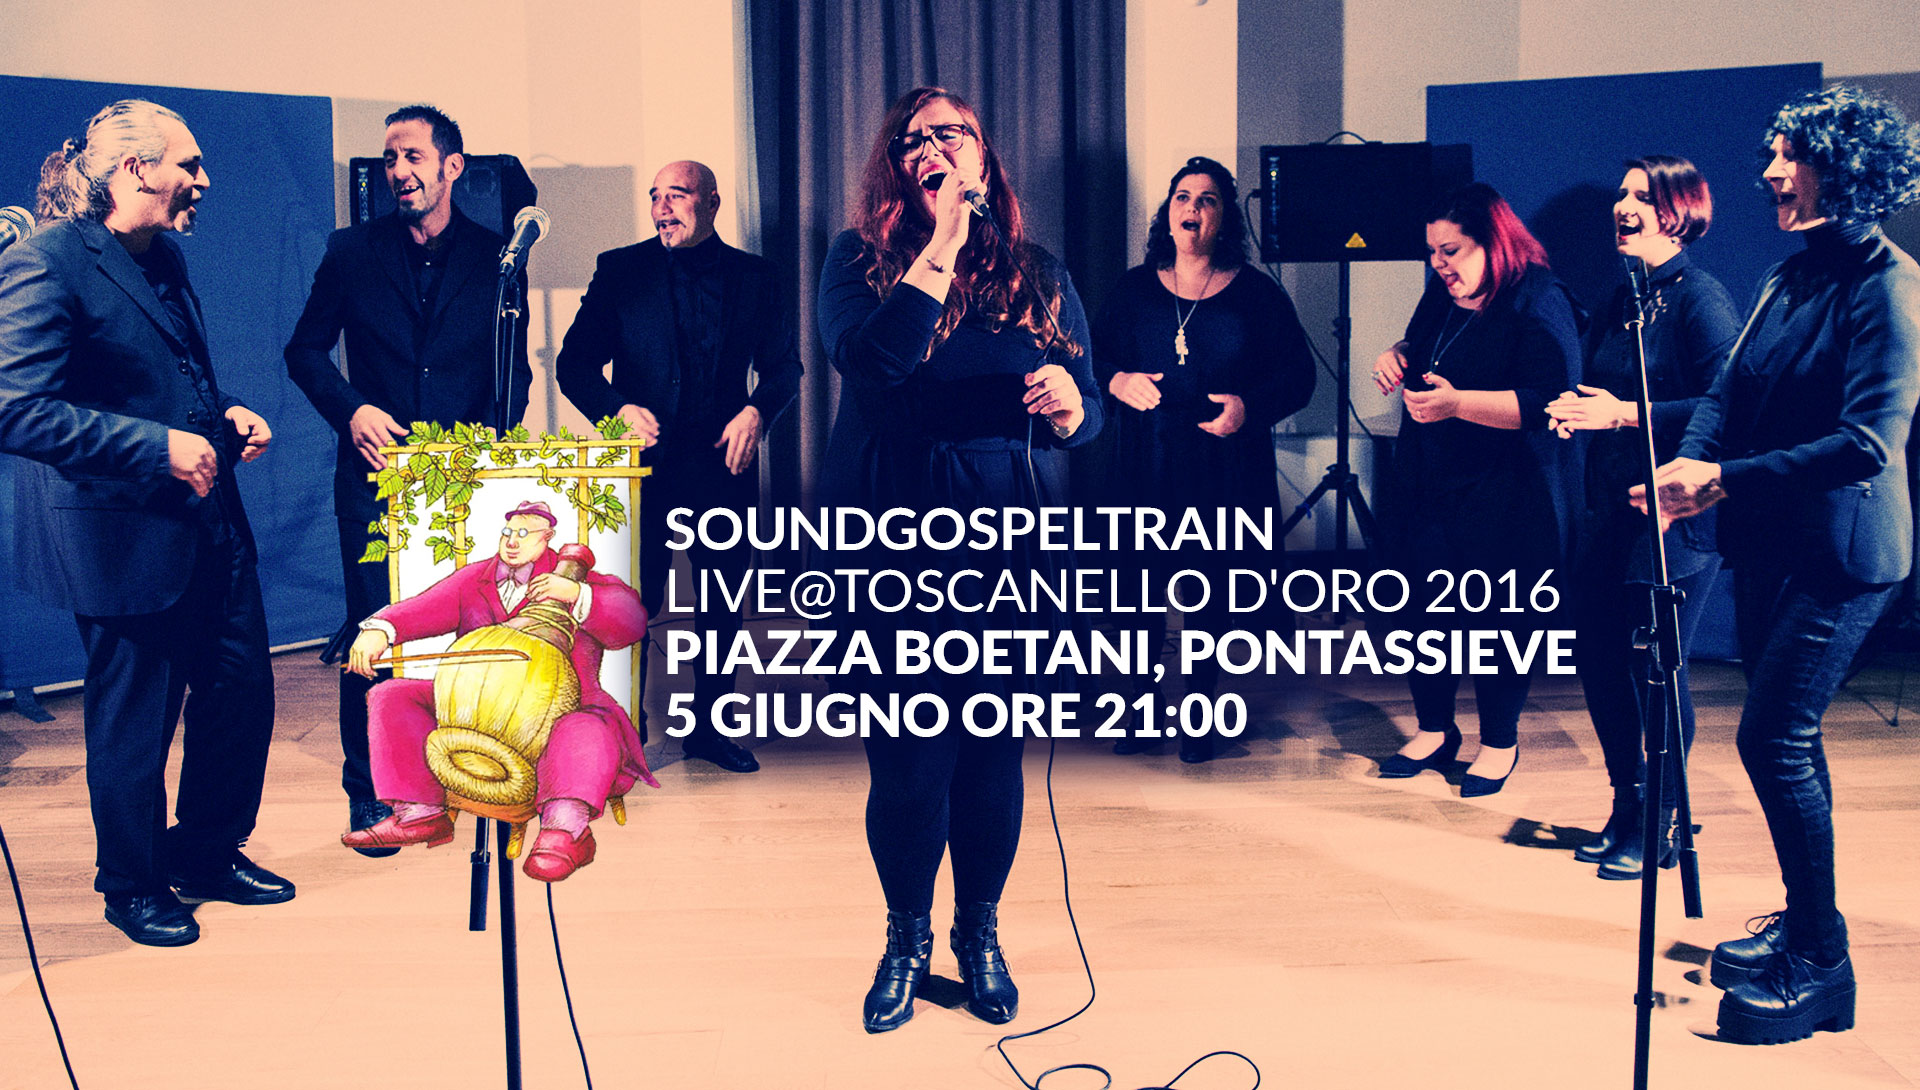 SoundGospelTrain in concerto al Toscanello d'Oro 5 Giugno 2016 ore 21